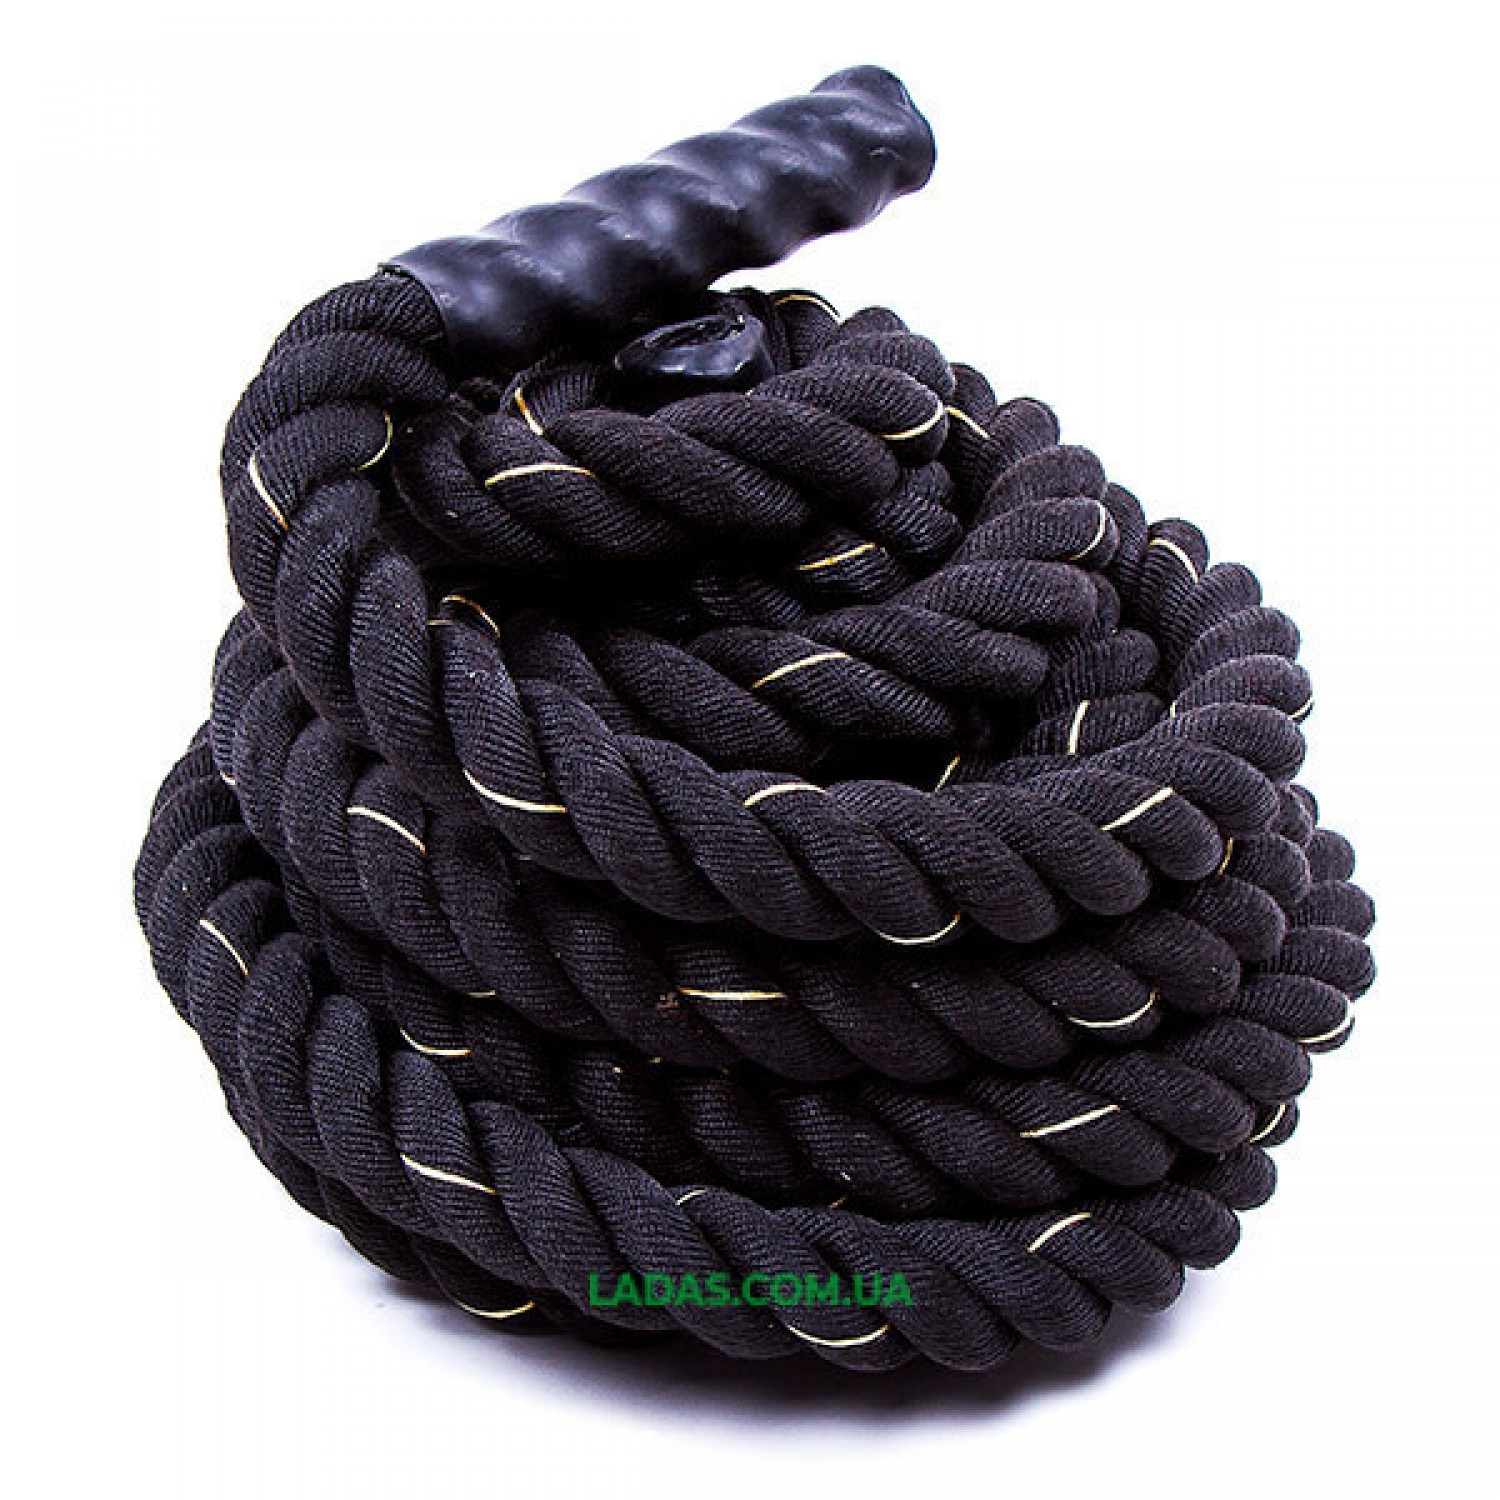 Канат для кроссфита черный Battle Rope (полипропилен, длина 15м, диаметр 3.8 см)